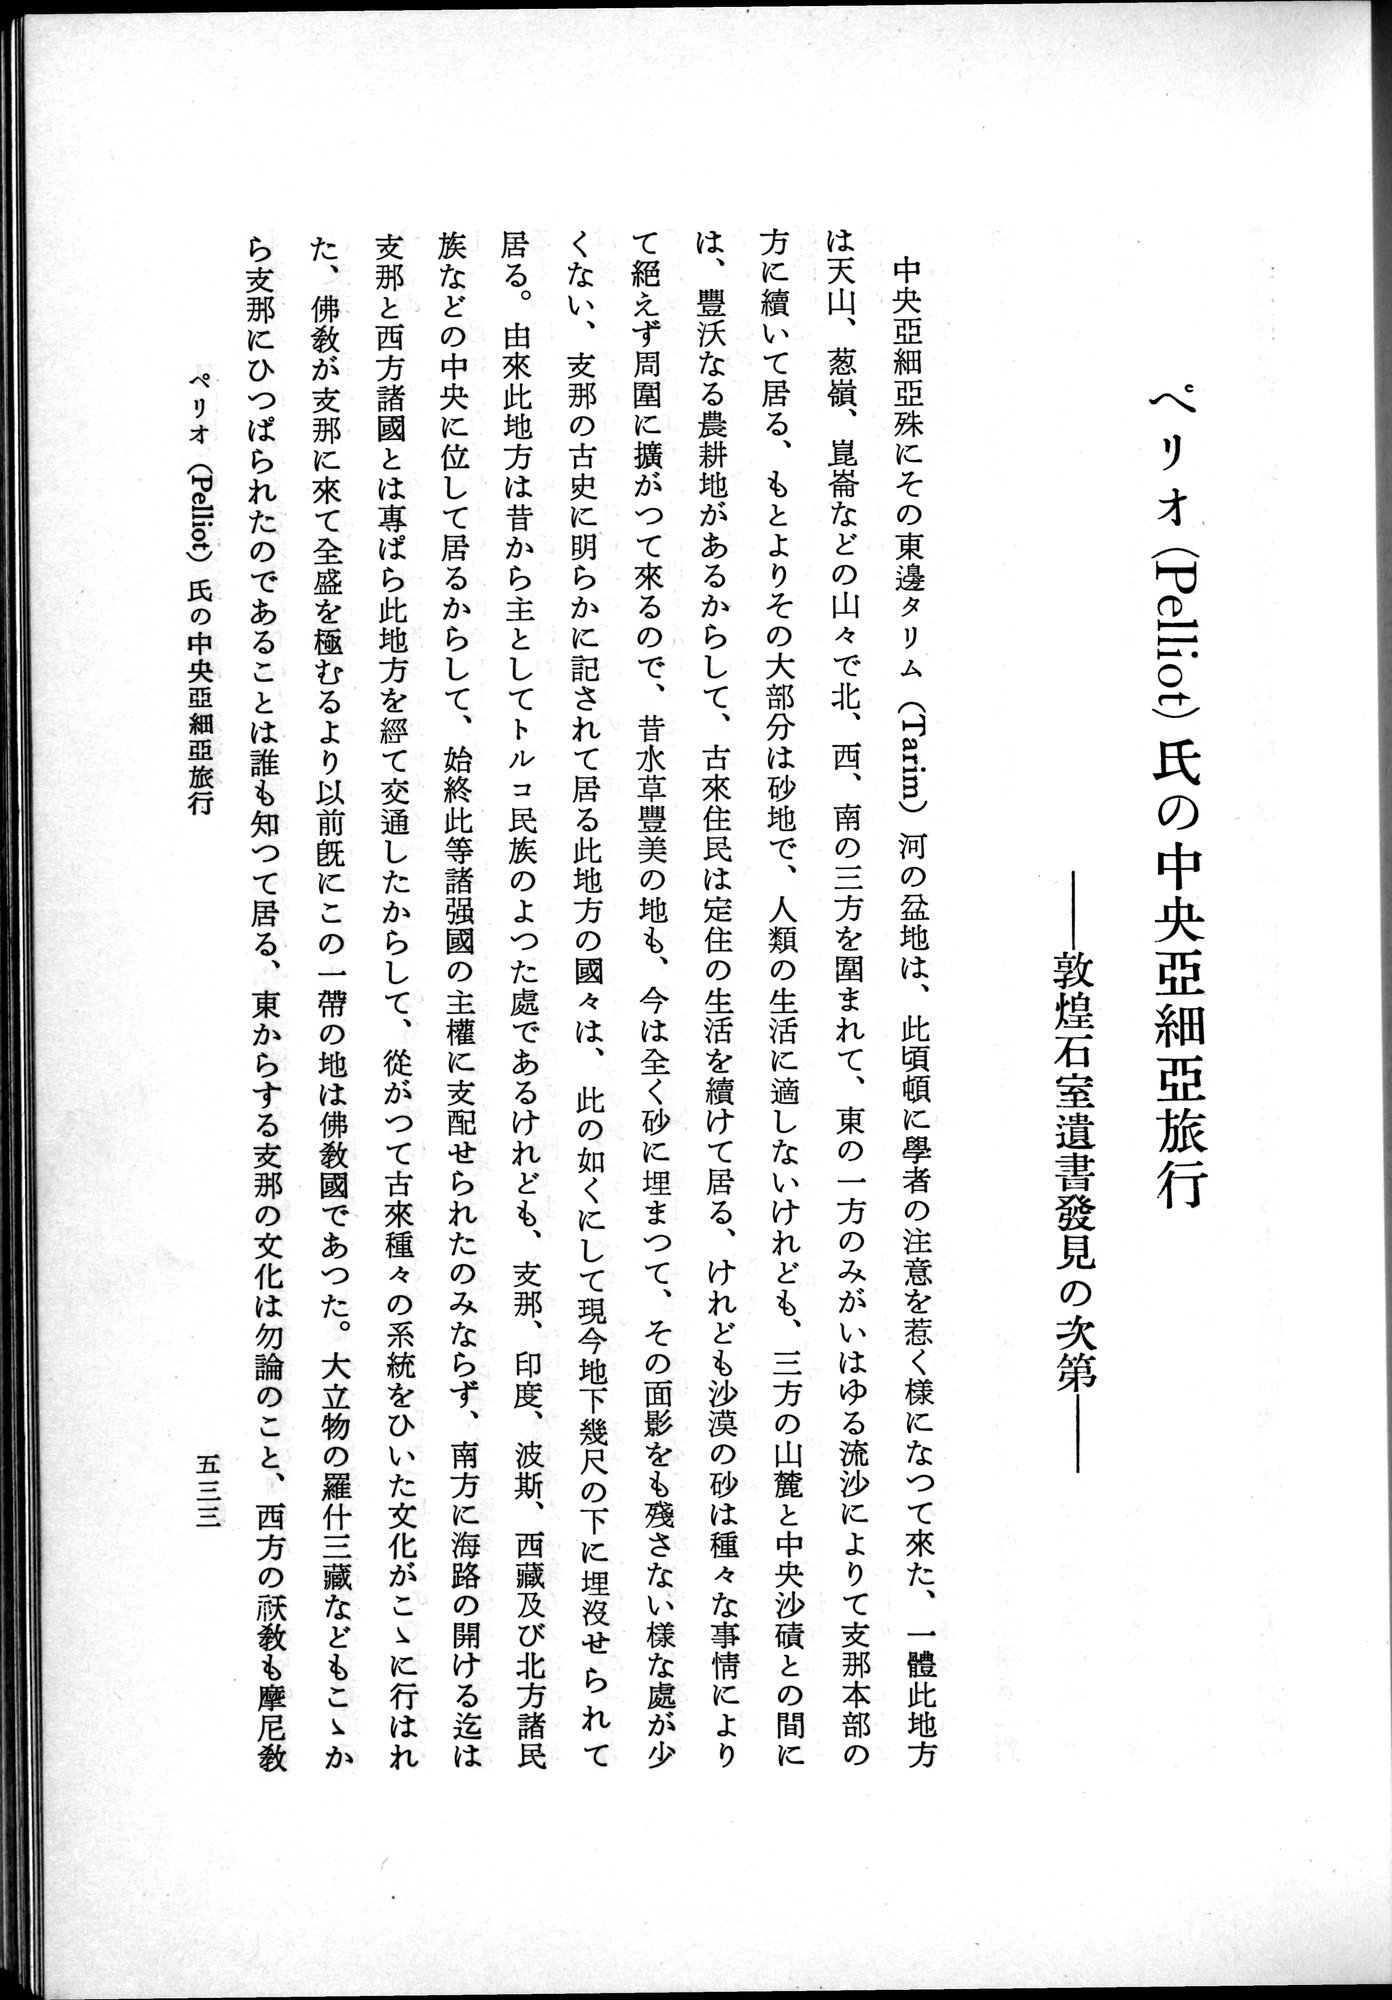 羽田博士史学論文集 : vol.2 / Page 595 (Grayscale High Resolution Image)